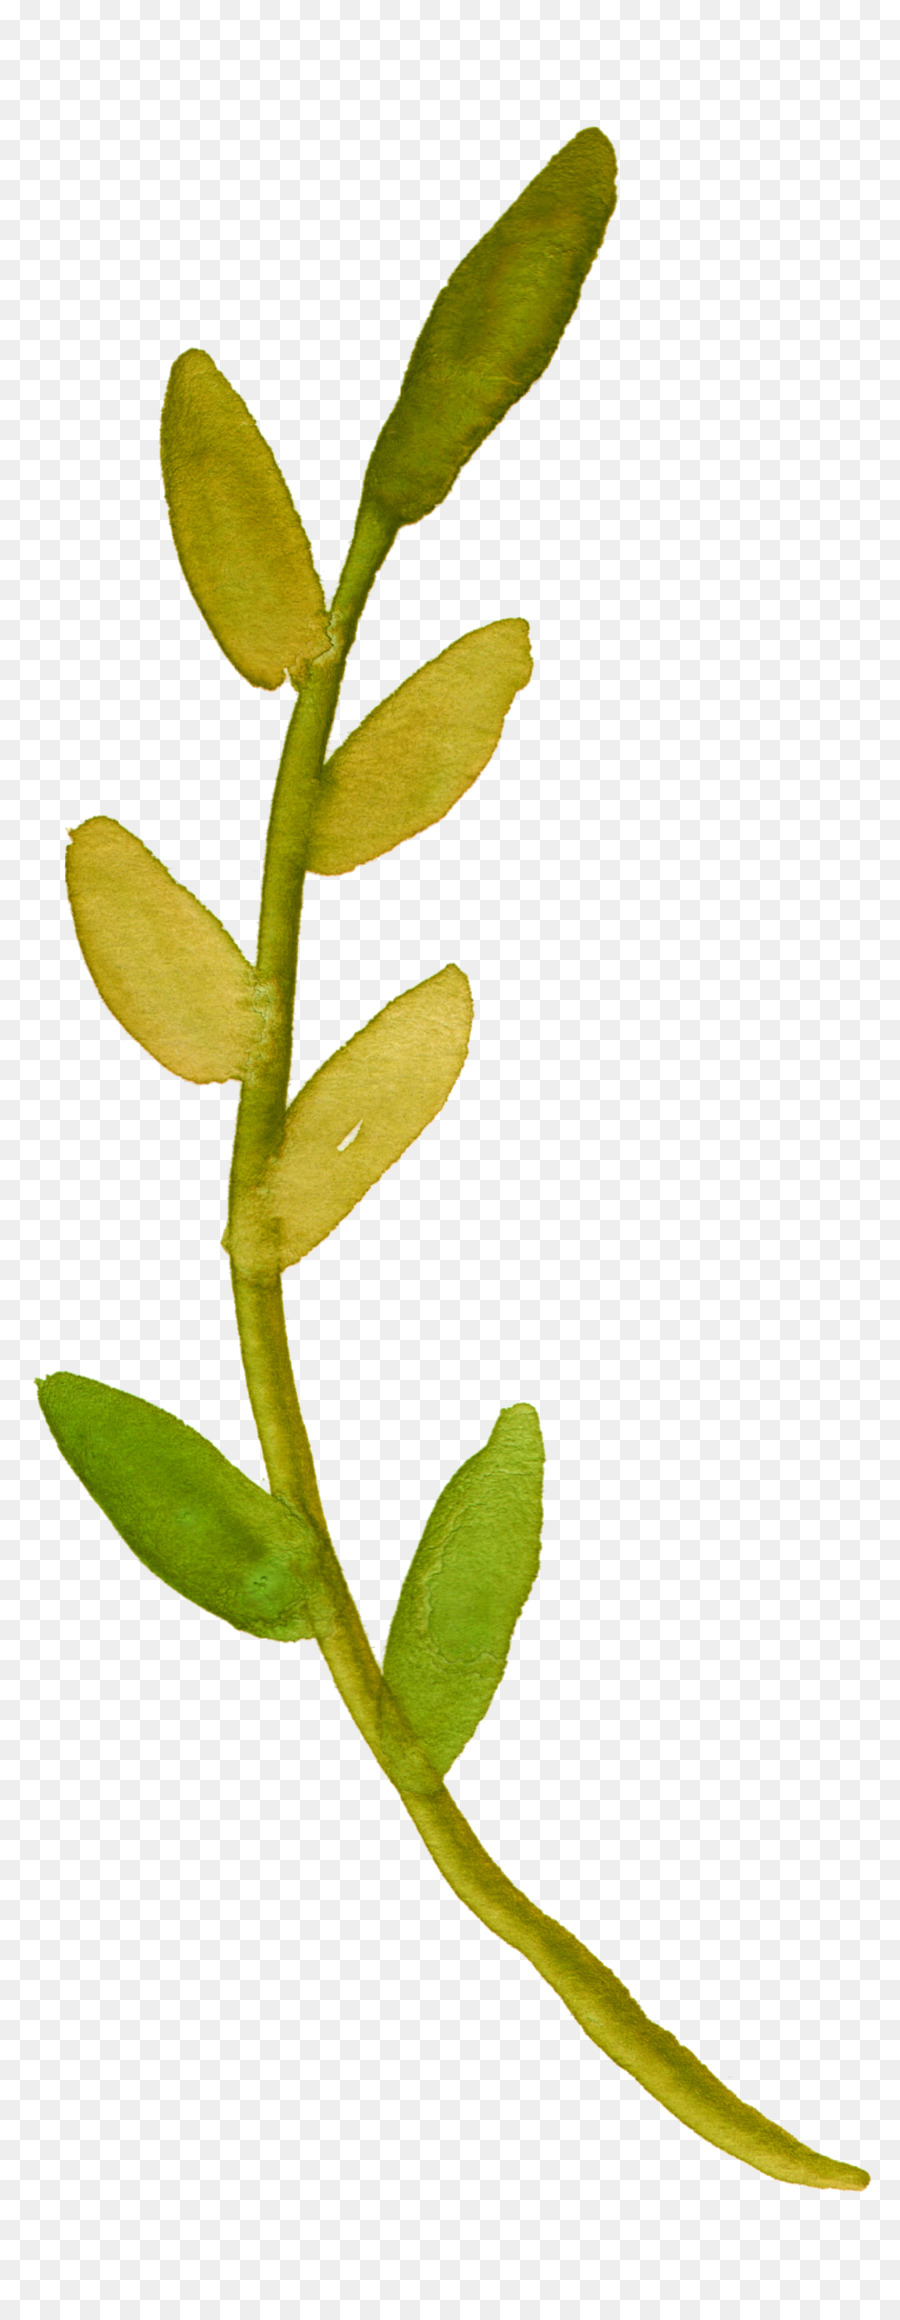 Aquarell-Malerei-Pflanze-Stiel Blume-Blatt-clipart - Aquarell Eukalyptus